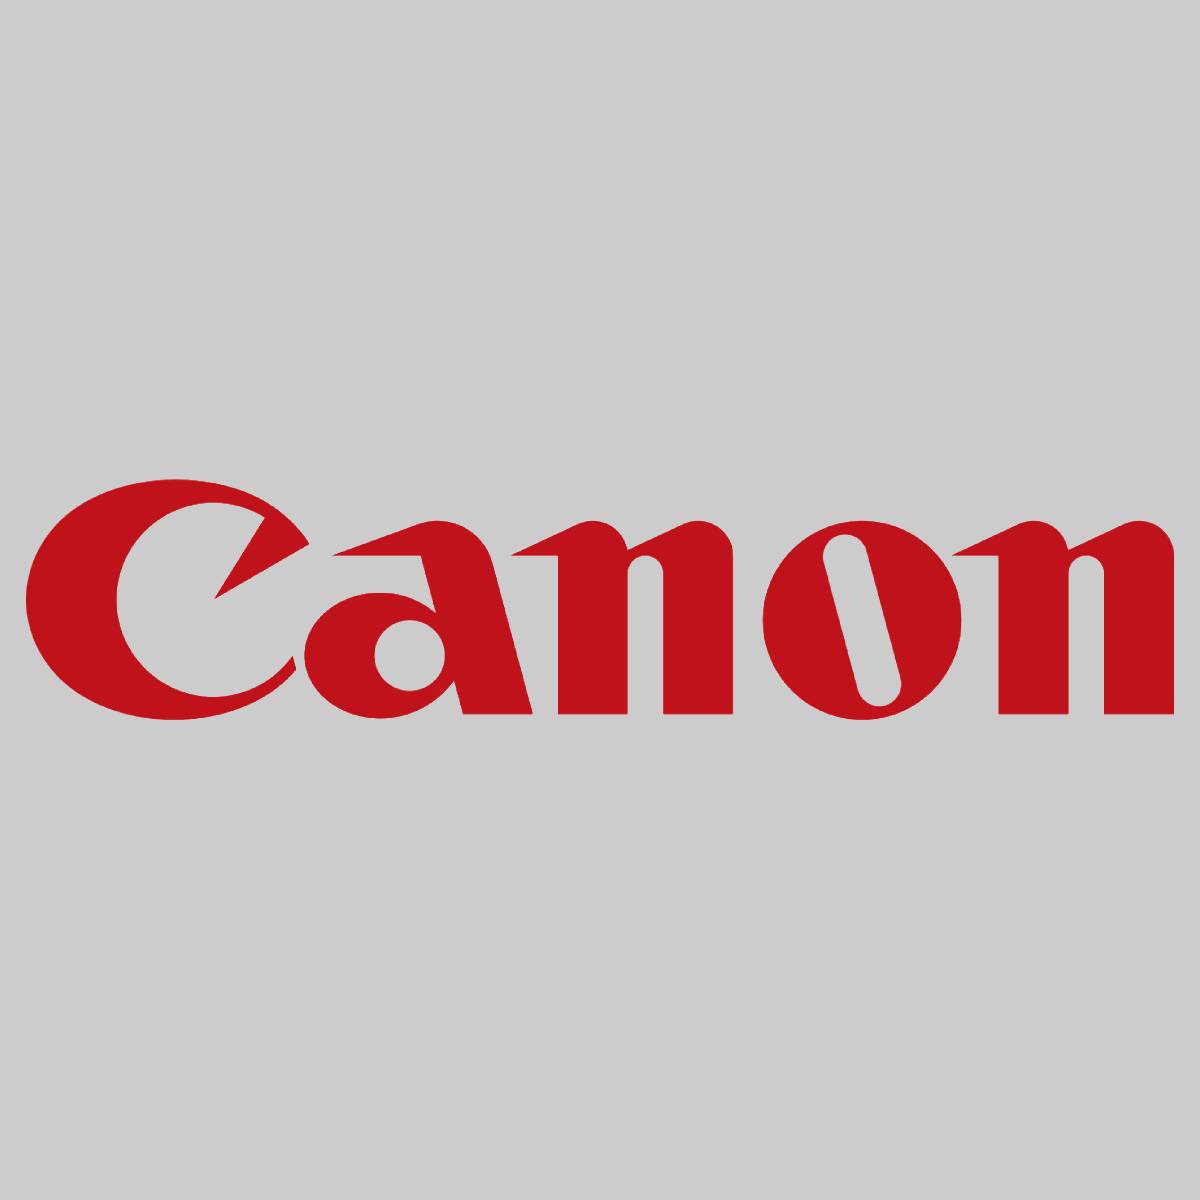 "Originální Canon Developer Assembly Cyan FM4-8353-010 IR C5030 C5035 C5045 C5051